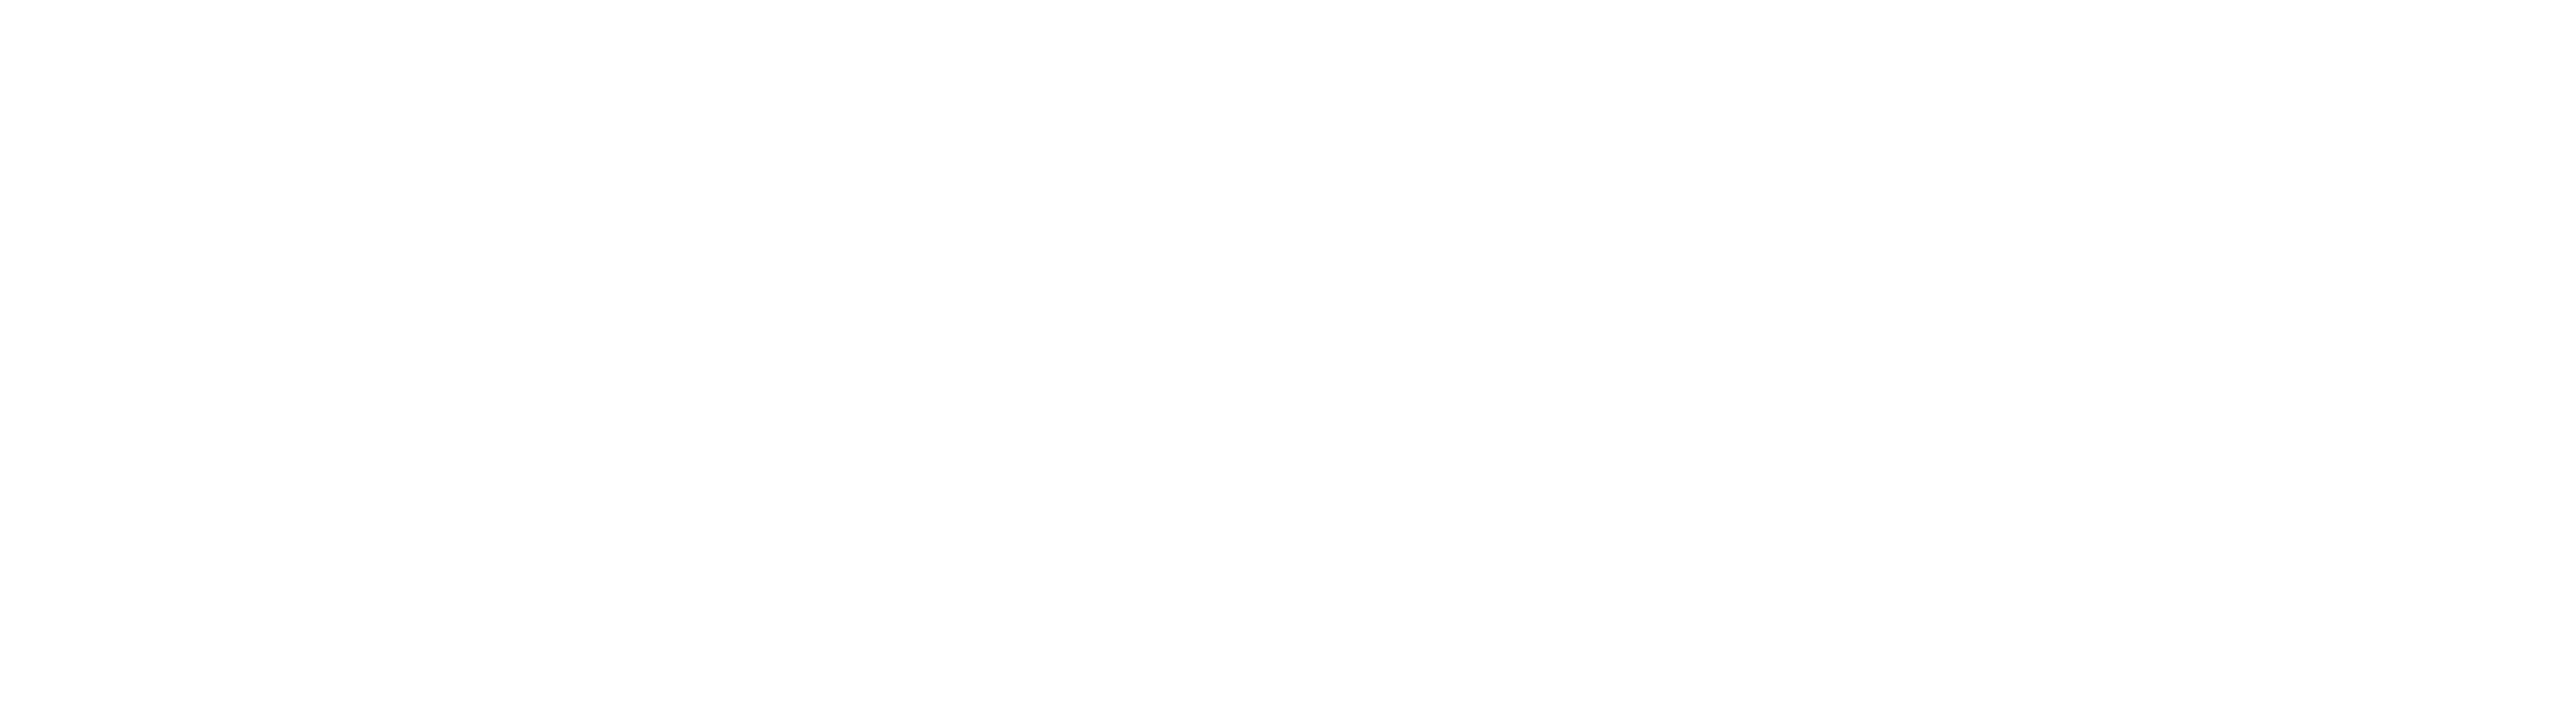 cto-logo-flat-white